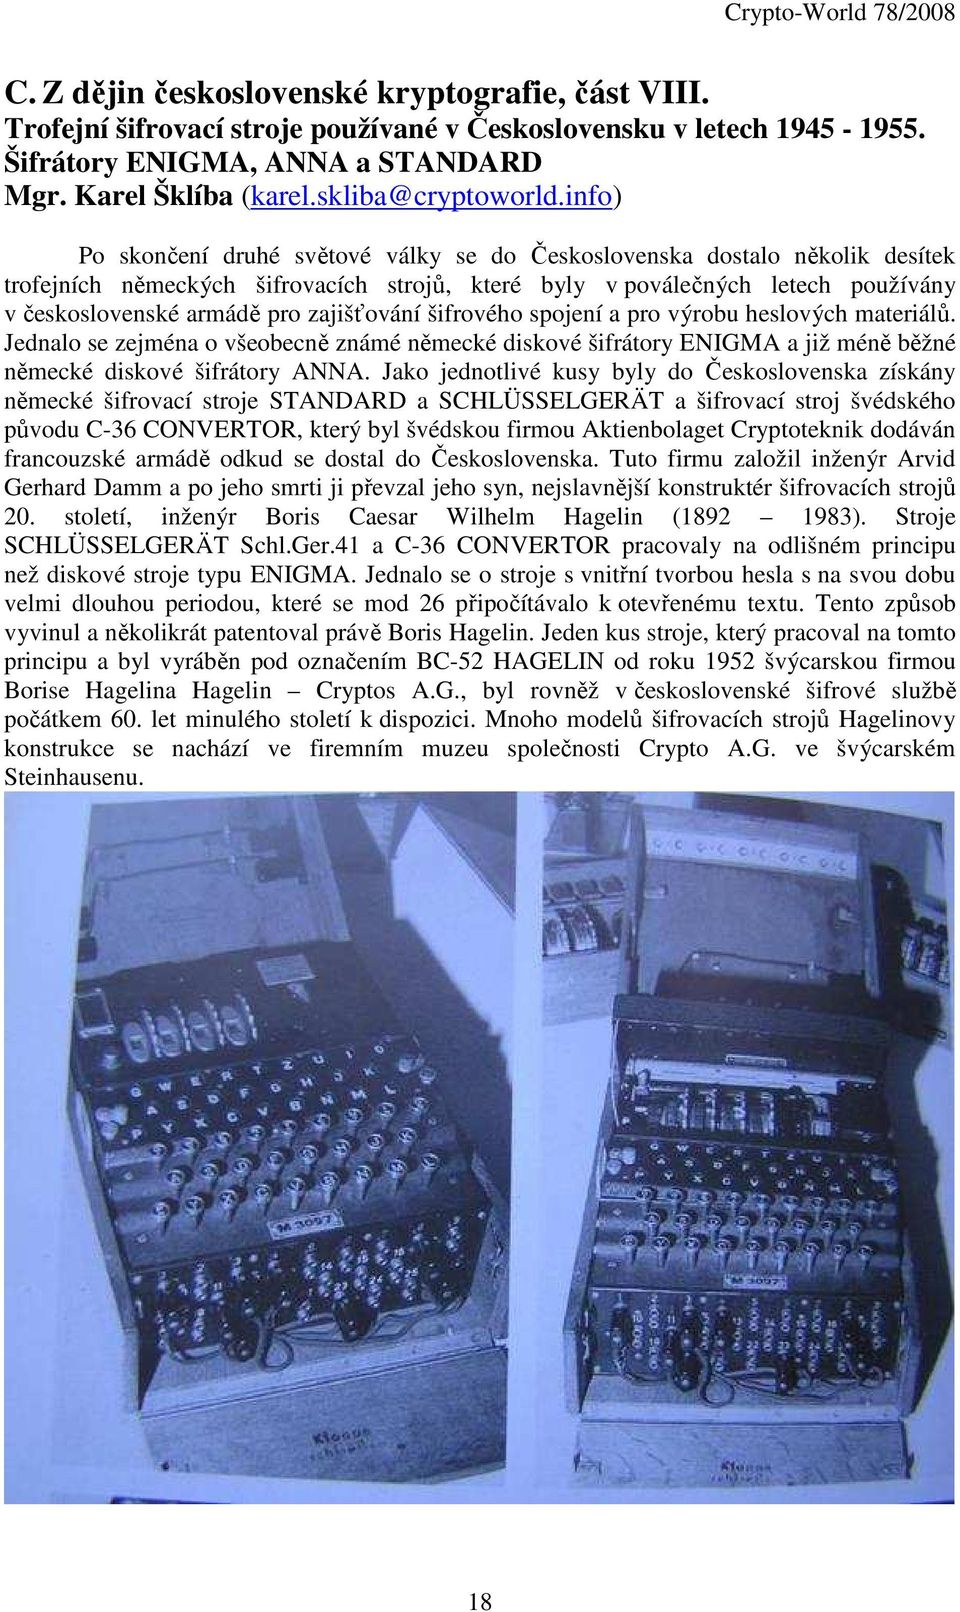 info) Po skončení druhé světové války se do Československa dostalo několik desítek trofejních německých šifrovacích strojů, které byly v poválečných letech používány v československé armádě pro